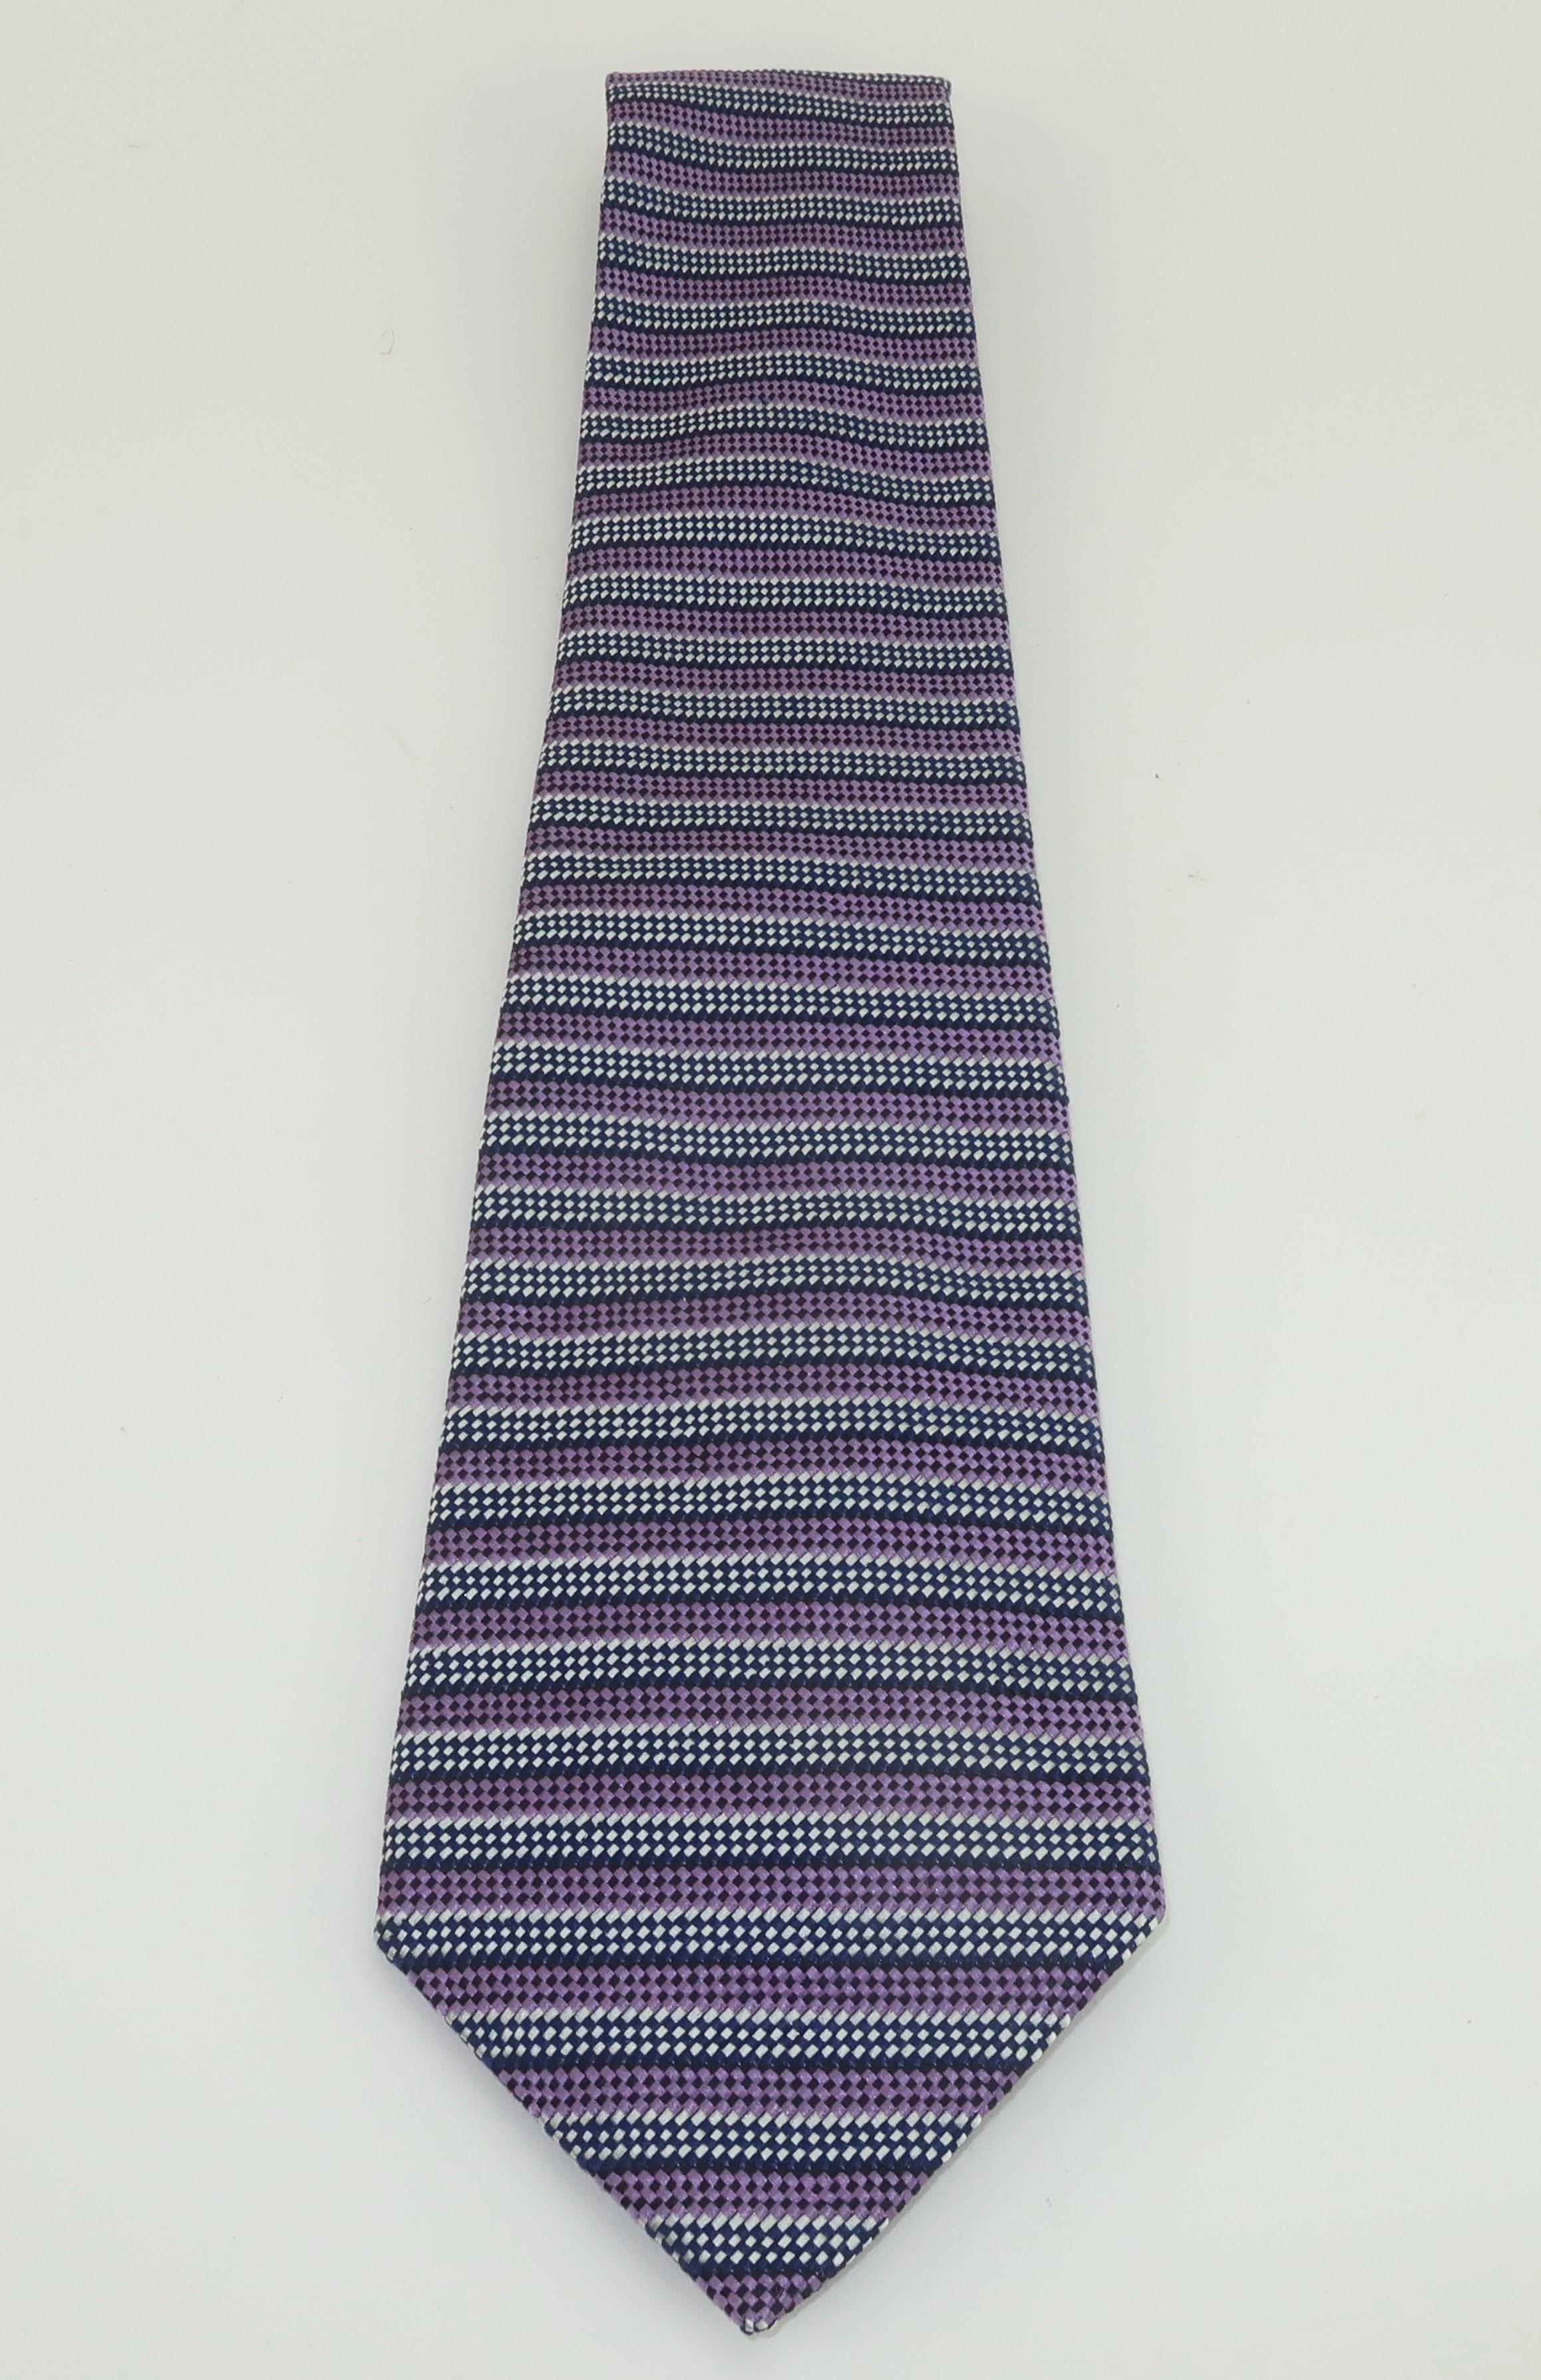 Die Seidenkrawatten von Turnbull & Asser, die sowohl von James Bond als auch vom ehemaligen Prince of Wales bevorzugt werden, sind das Nonplusultra der englischen Herrenmode.  Diese blau-violett gestreifte Krawatte stammt aus dem Nachlass von Carl